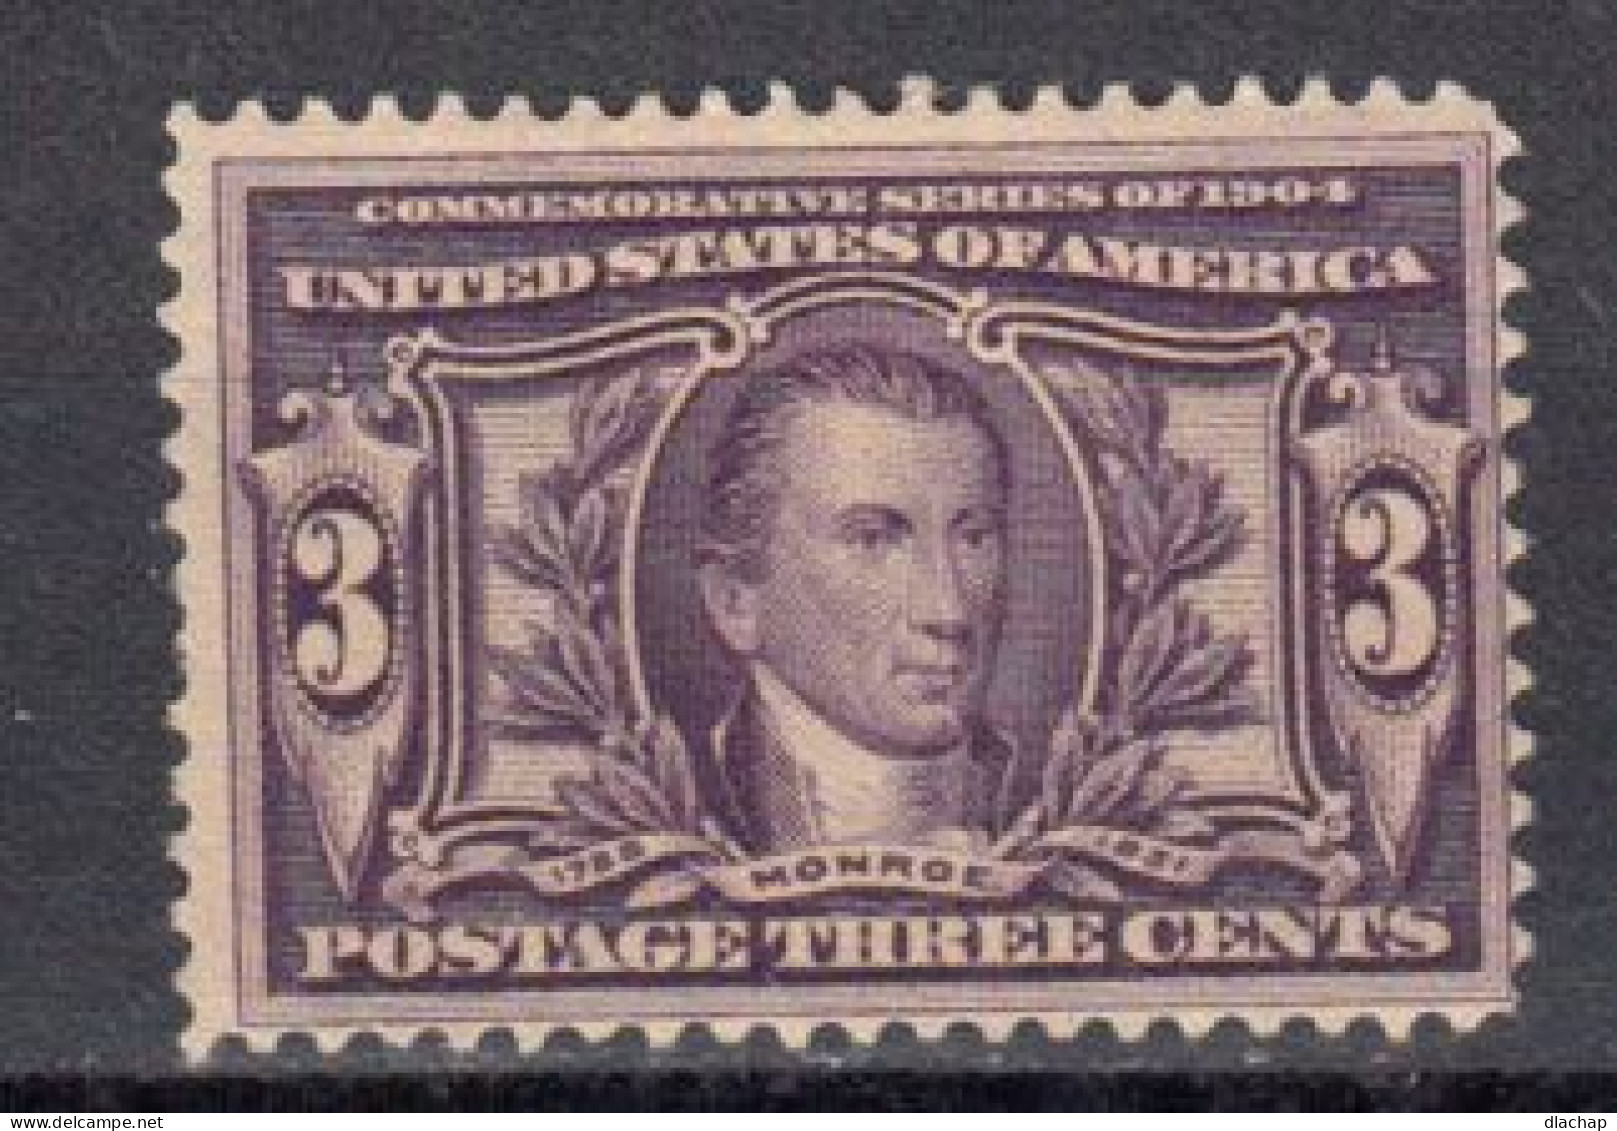 Etats Unis 1904 Yvert 161 * Neuf Avec Charniere. Commemoration De L'achat De La Louisiane à La France - Unused Stamps